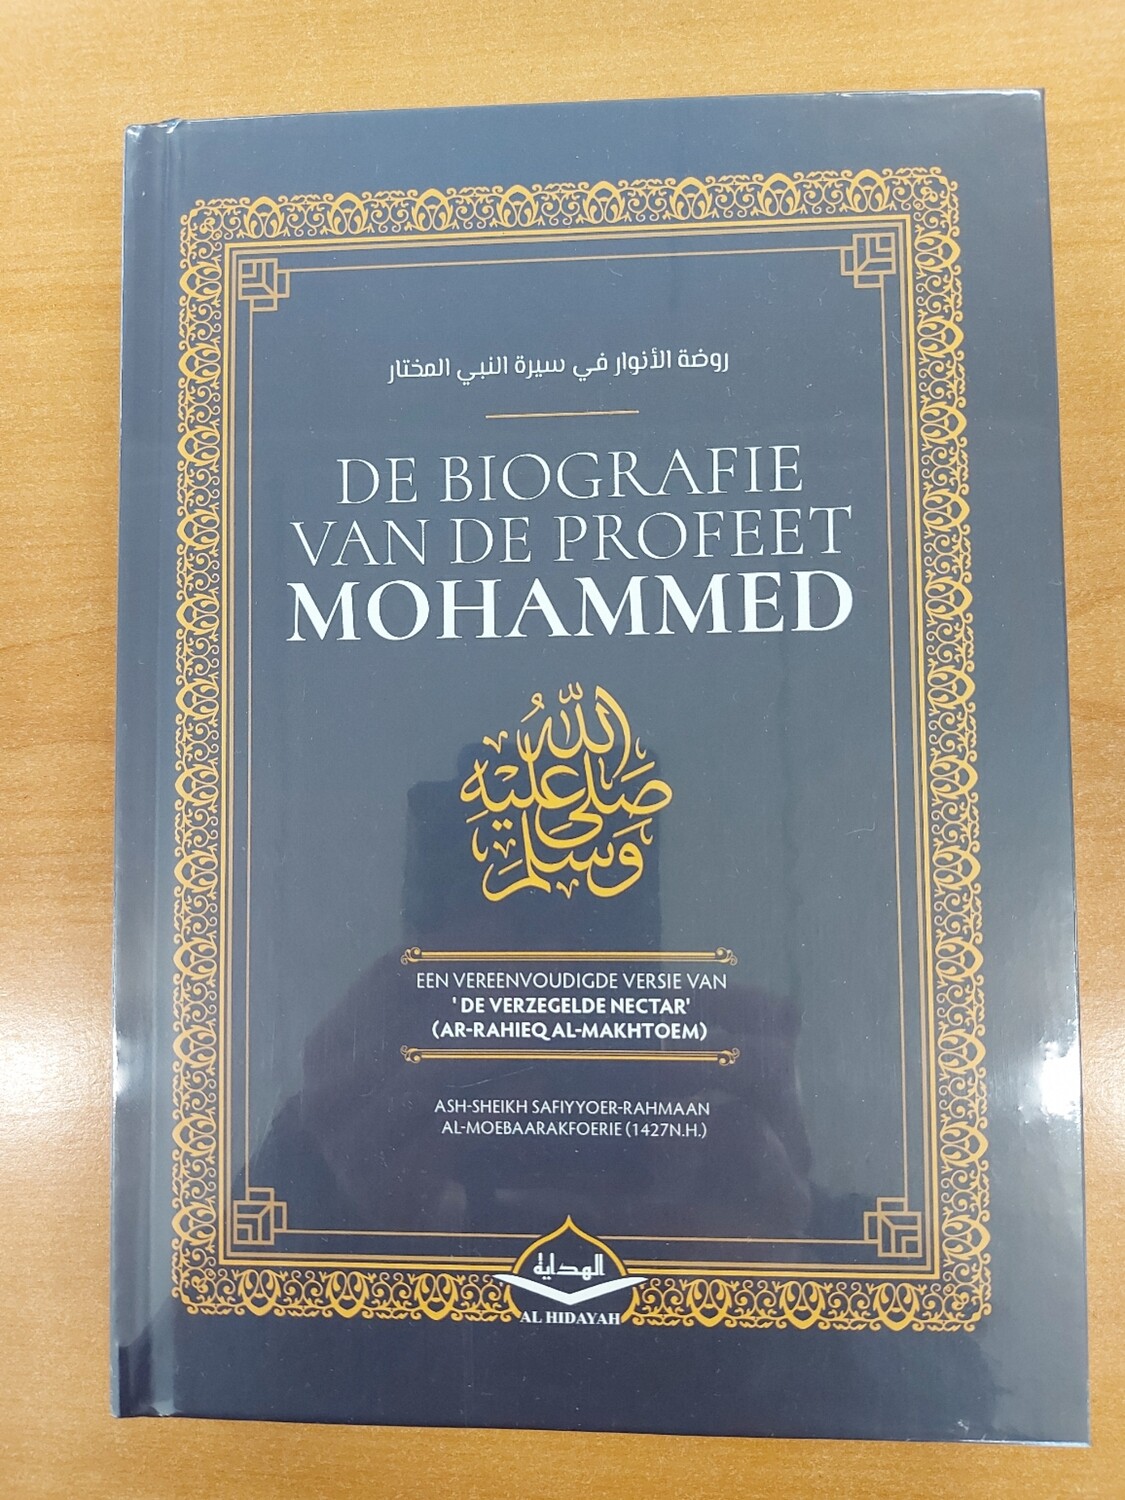 De biografie van de Profeet Mohammed